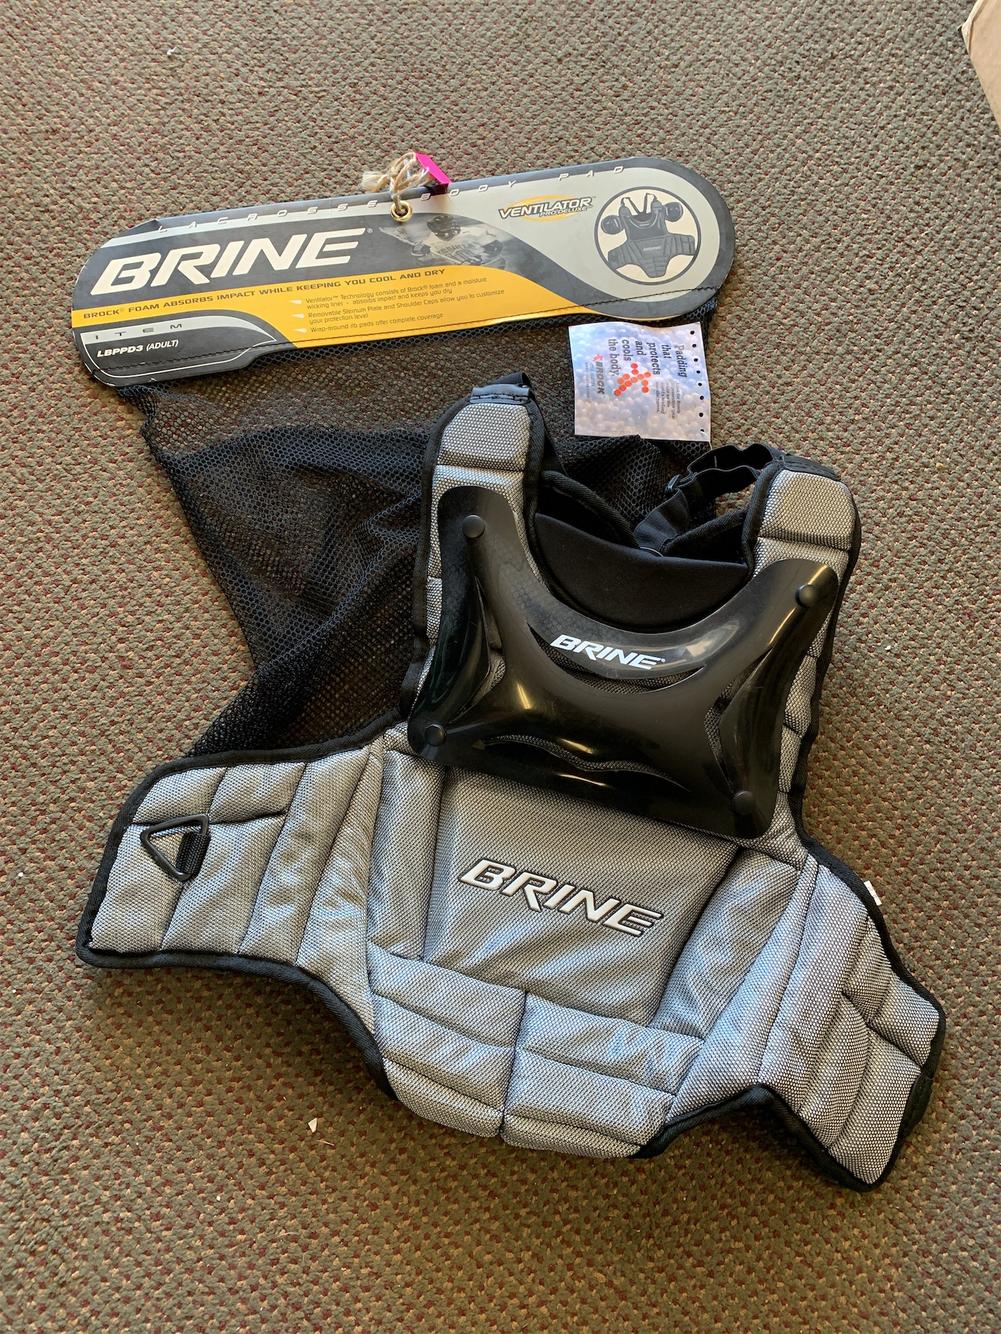 New Brine Rogue HD lacrosse rib pads sz medium kidney guard field box indoor 